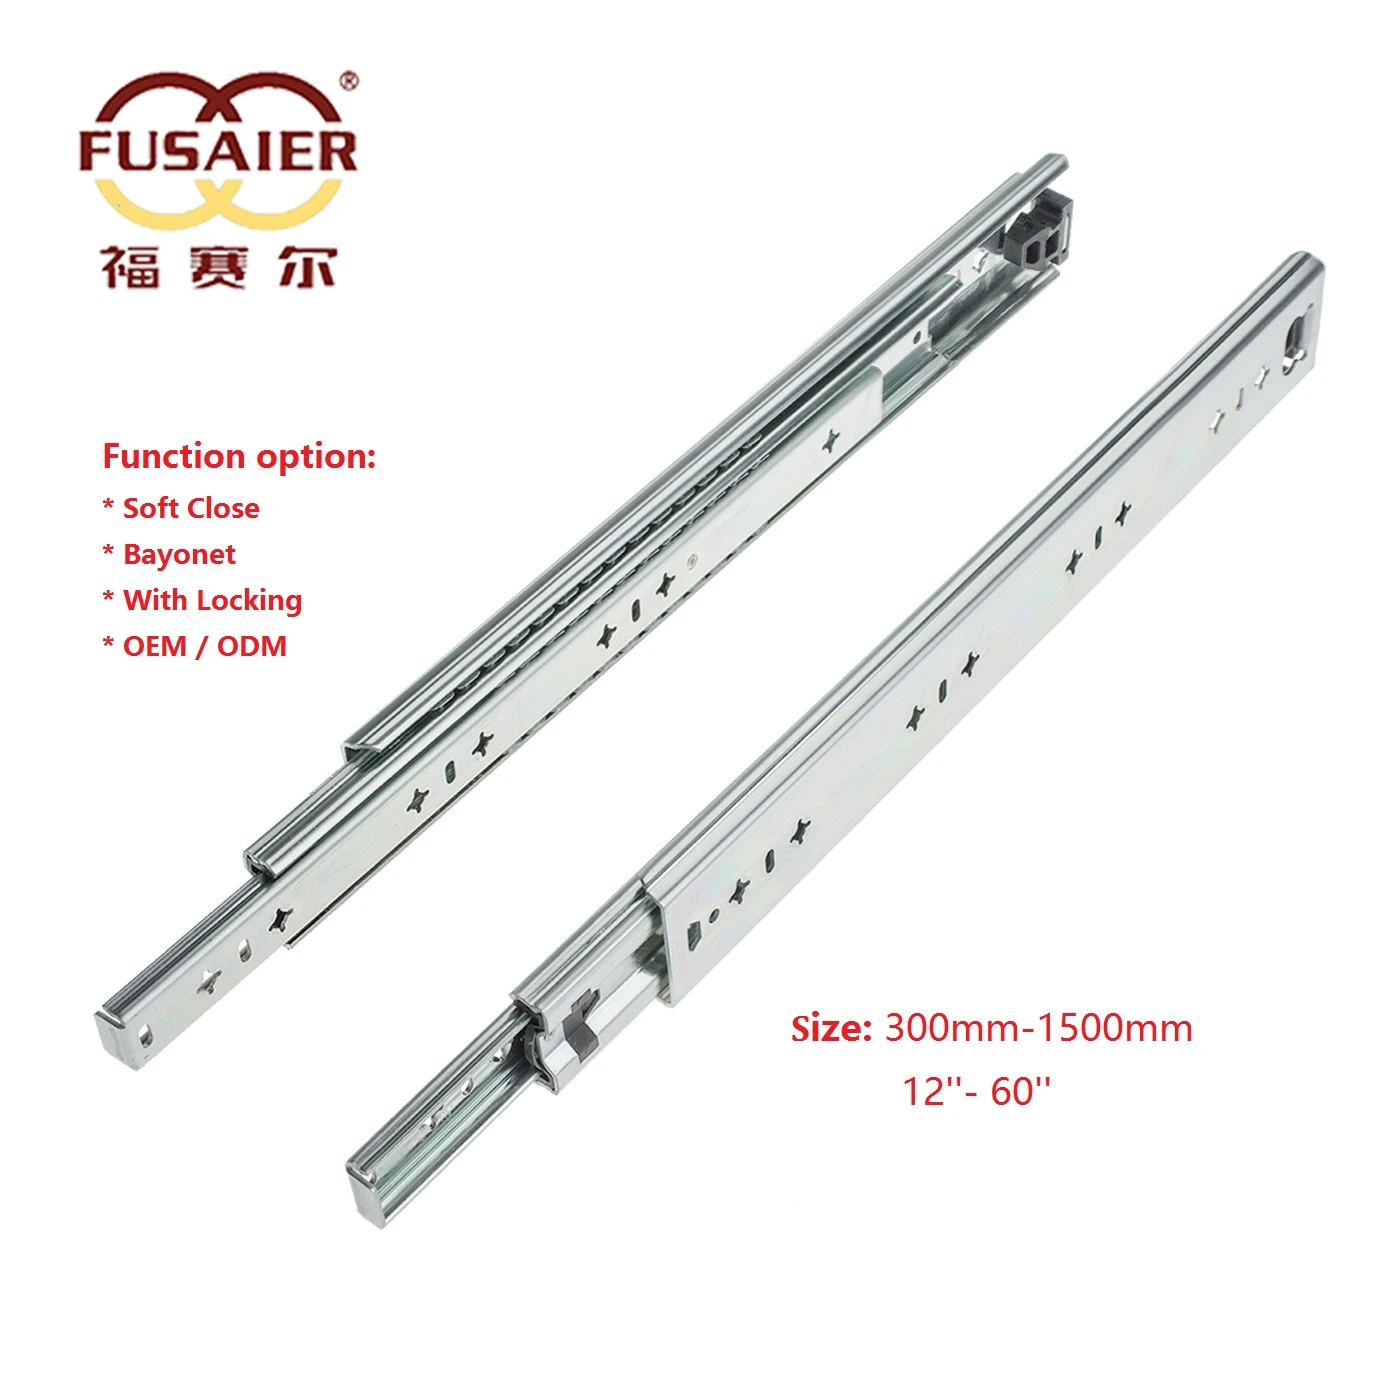 Fuaier Foshan 53mm heavy duty load 100kg capacity telescopic channels drawer slide